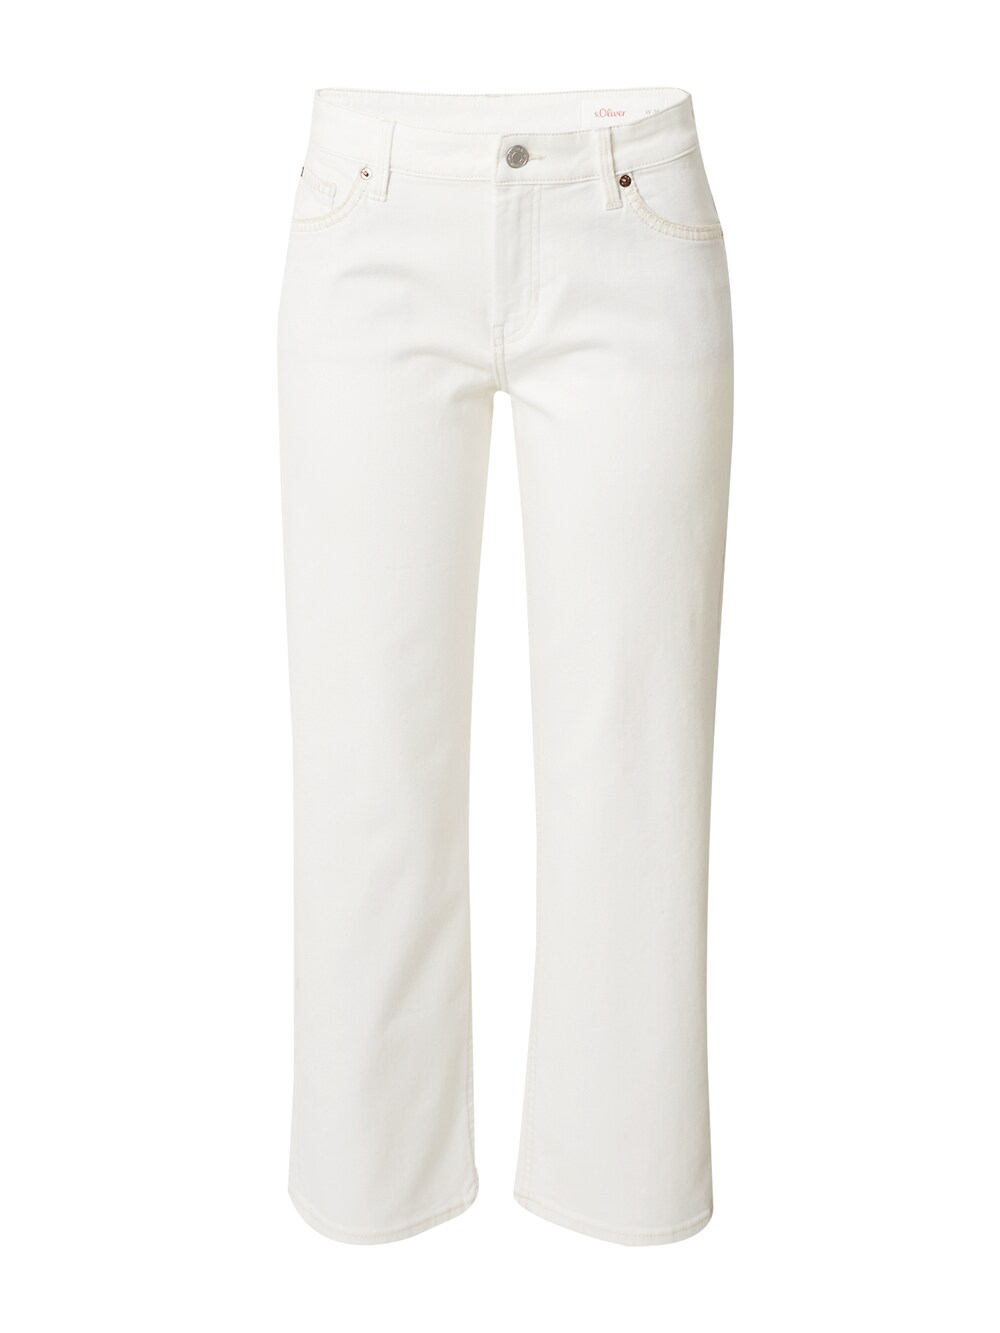 Обычные джинсы S.Oliver, натуральный белый